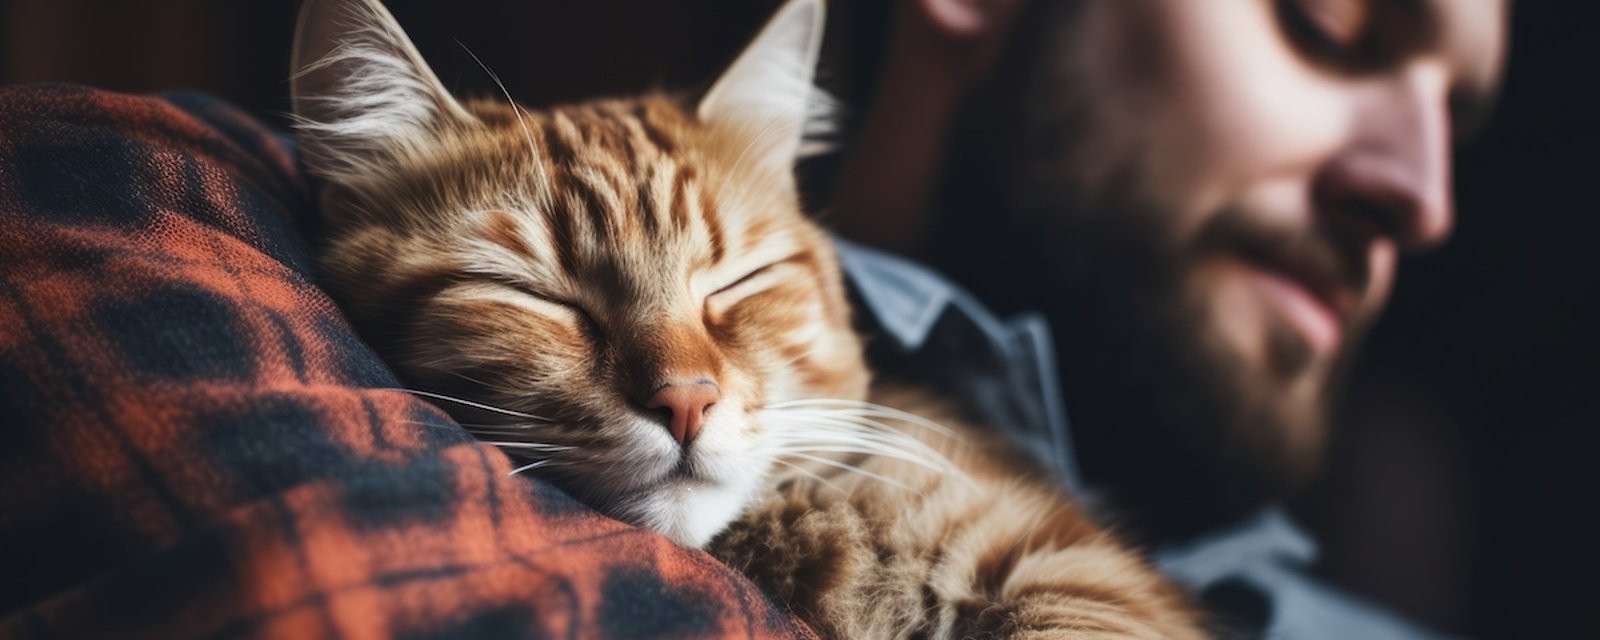 Pourquoi votre chat aime-t-il dormir dans votre lit?